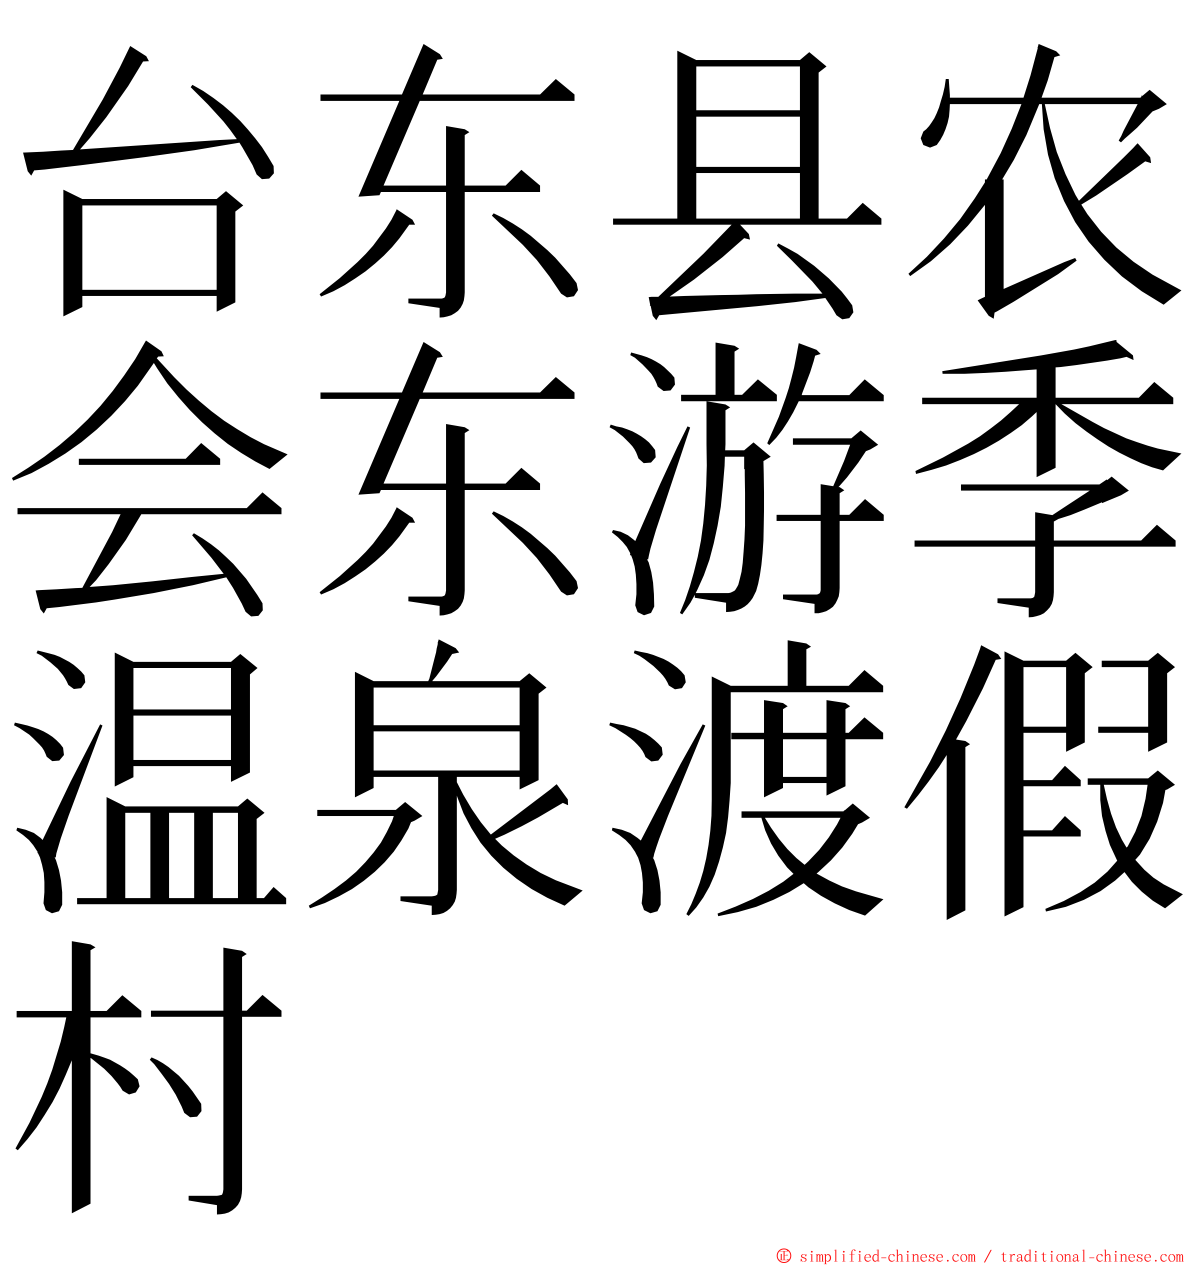 台东县农会东游季温泉渡假村 ming font